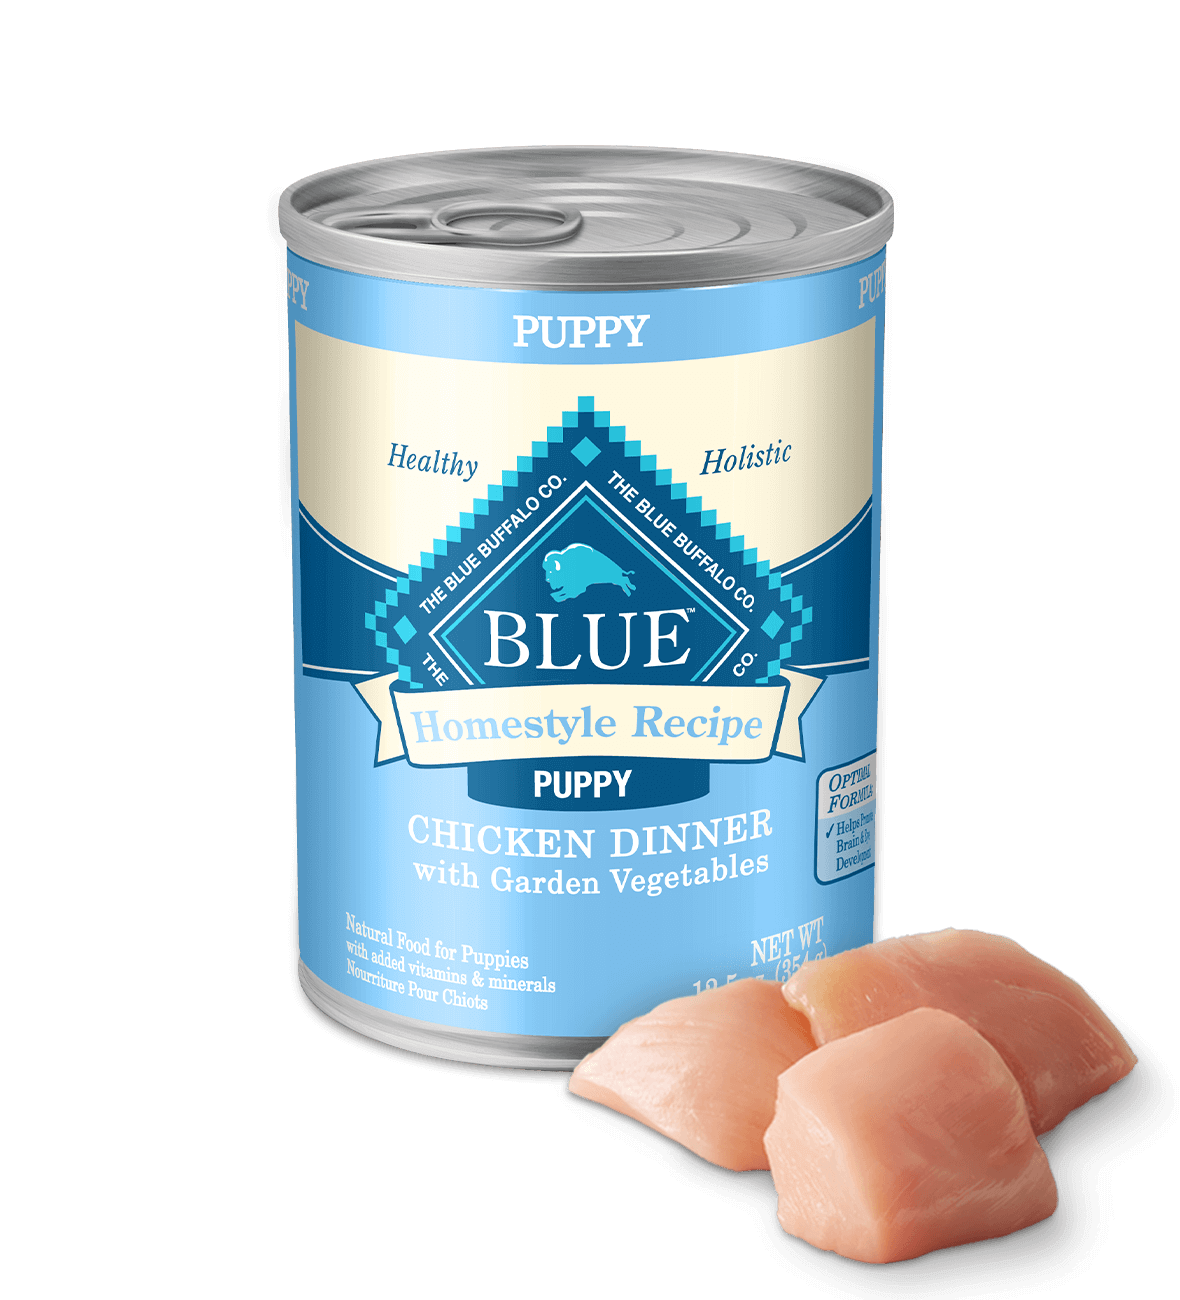 Blue homestyle recipe puppy chicken dinner with garden vegetables dog wet food